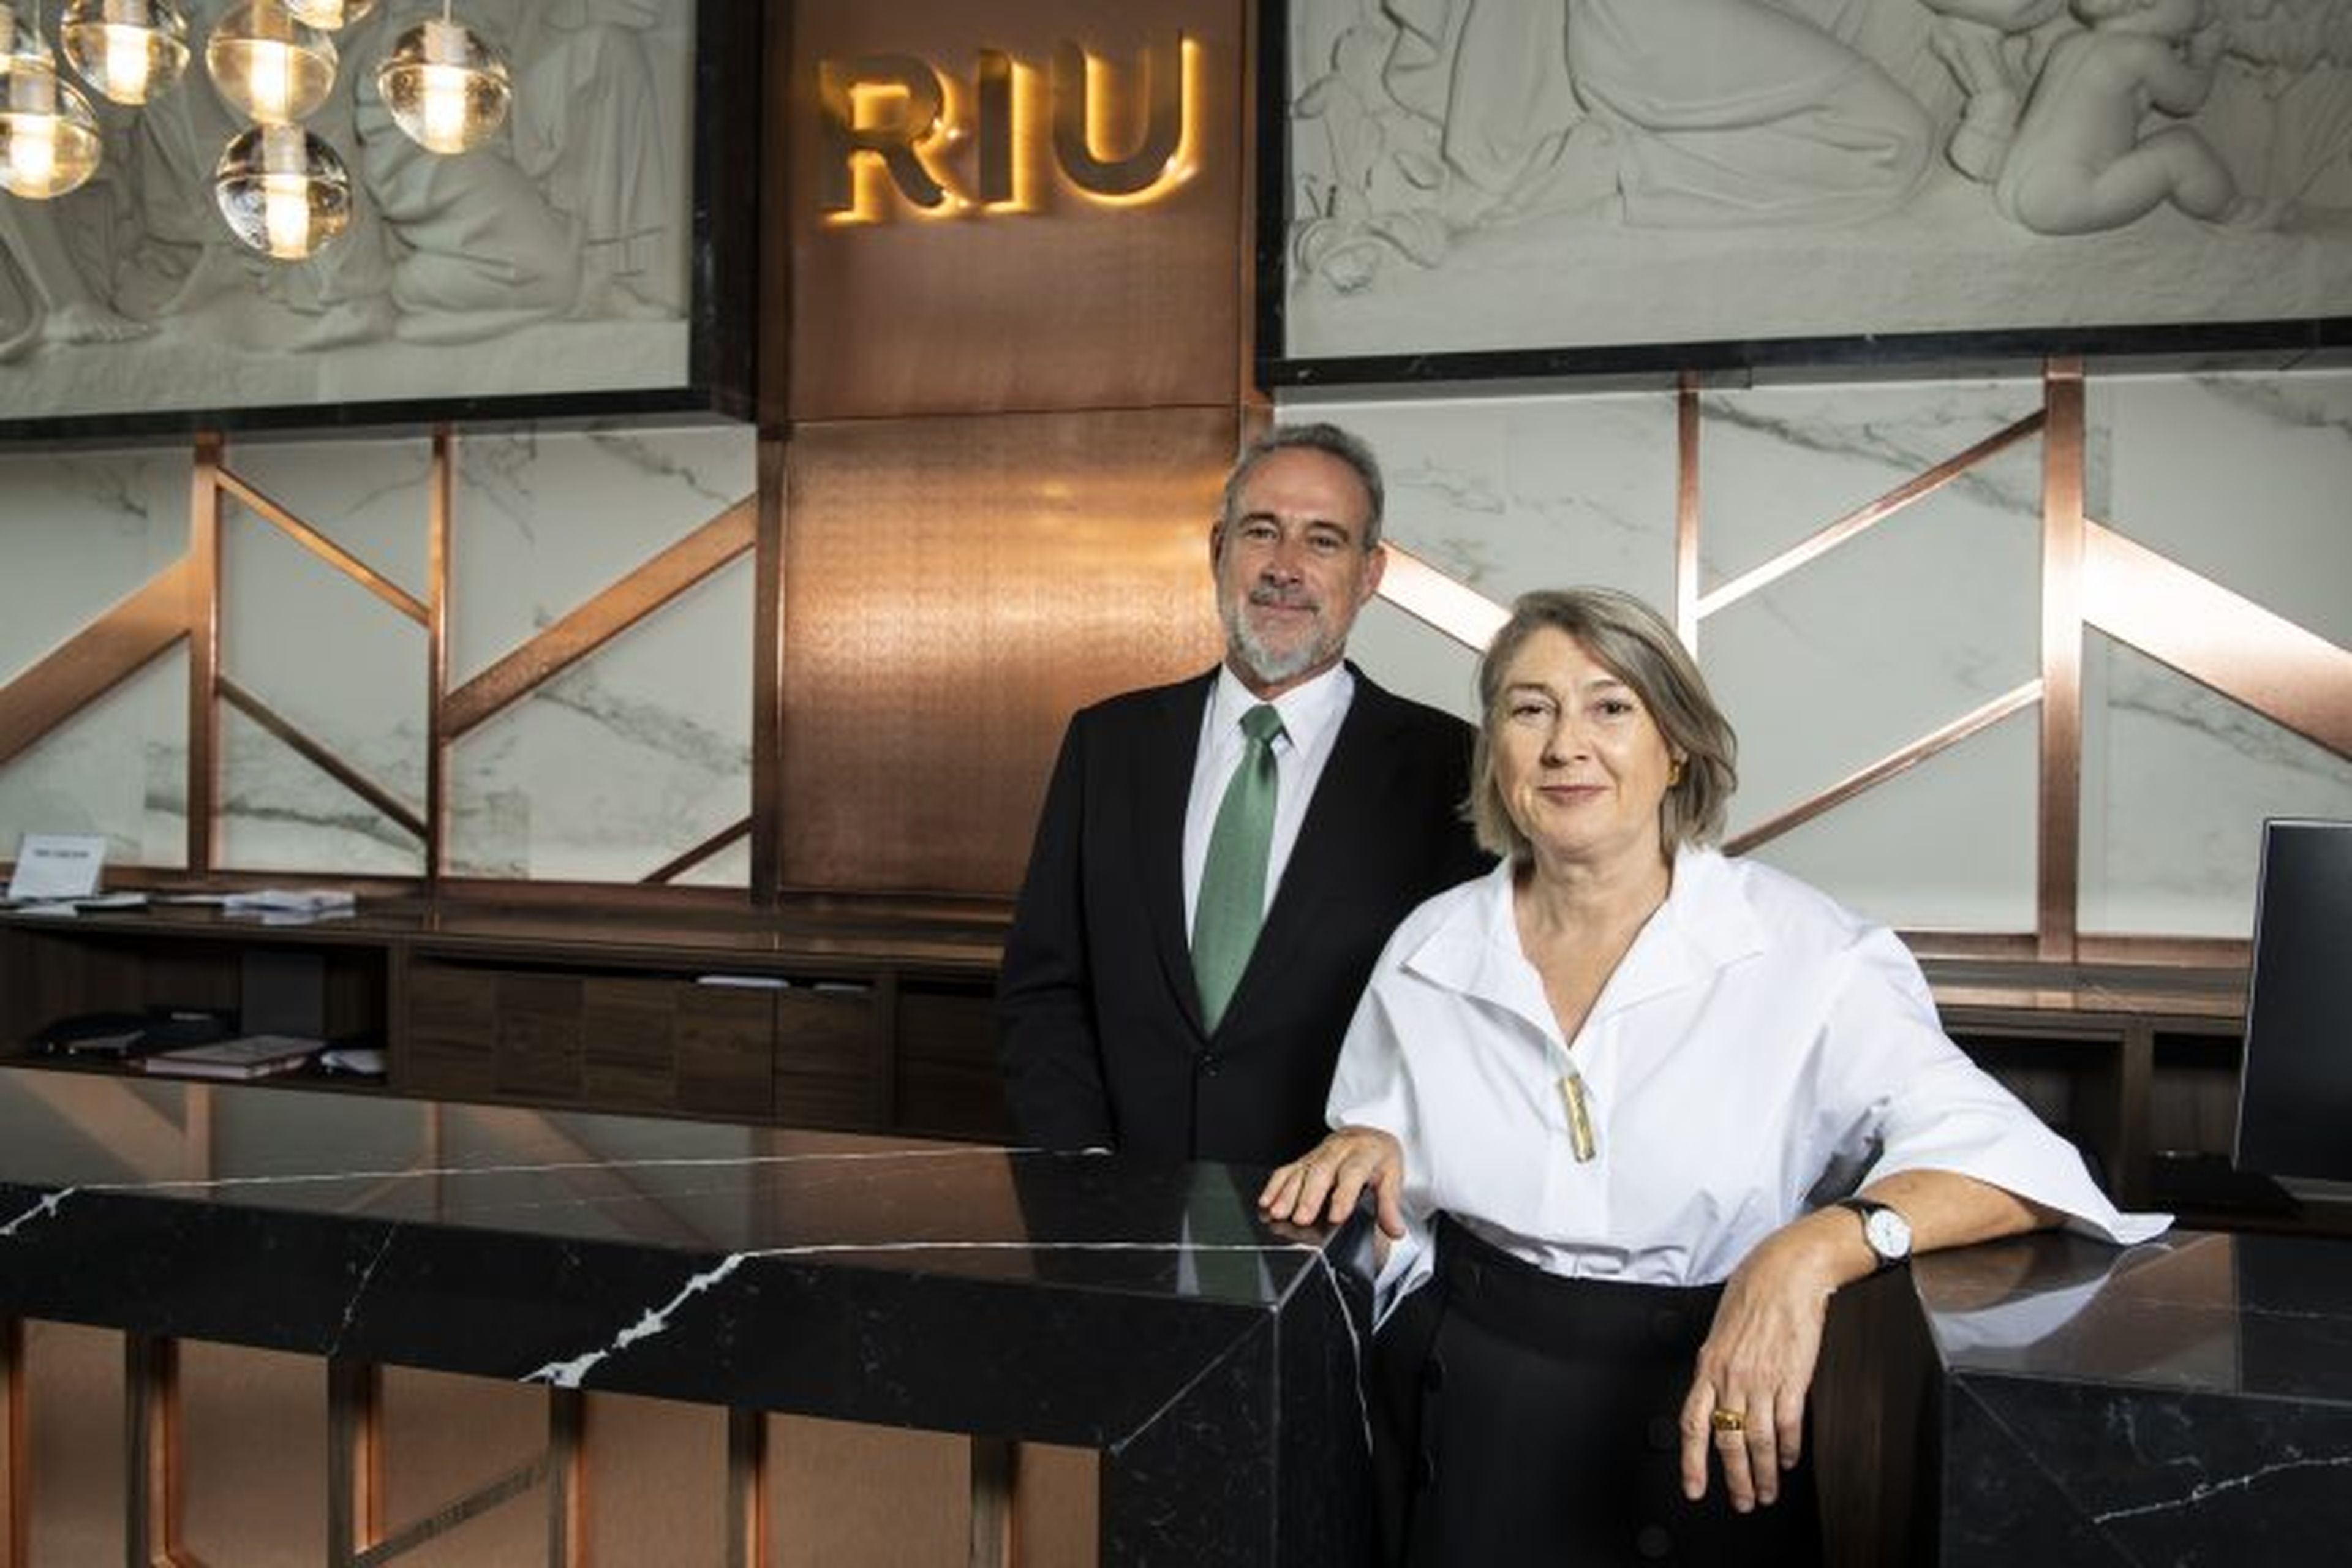 Los hermanos Luis y Carmen Riu, dueños de la cadena hotelera RIU.